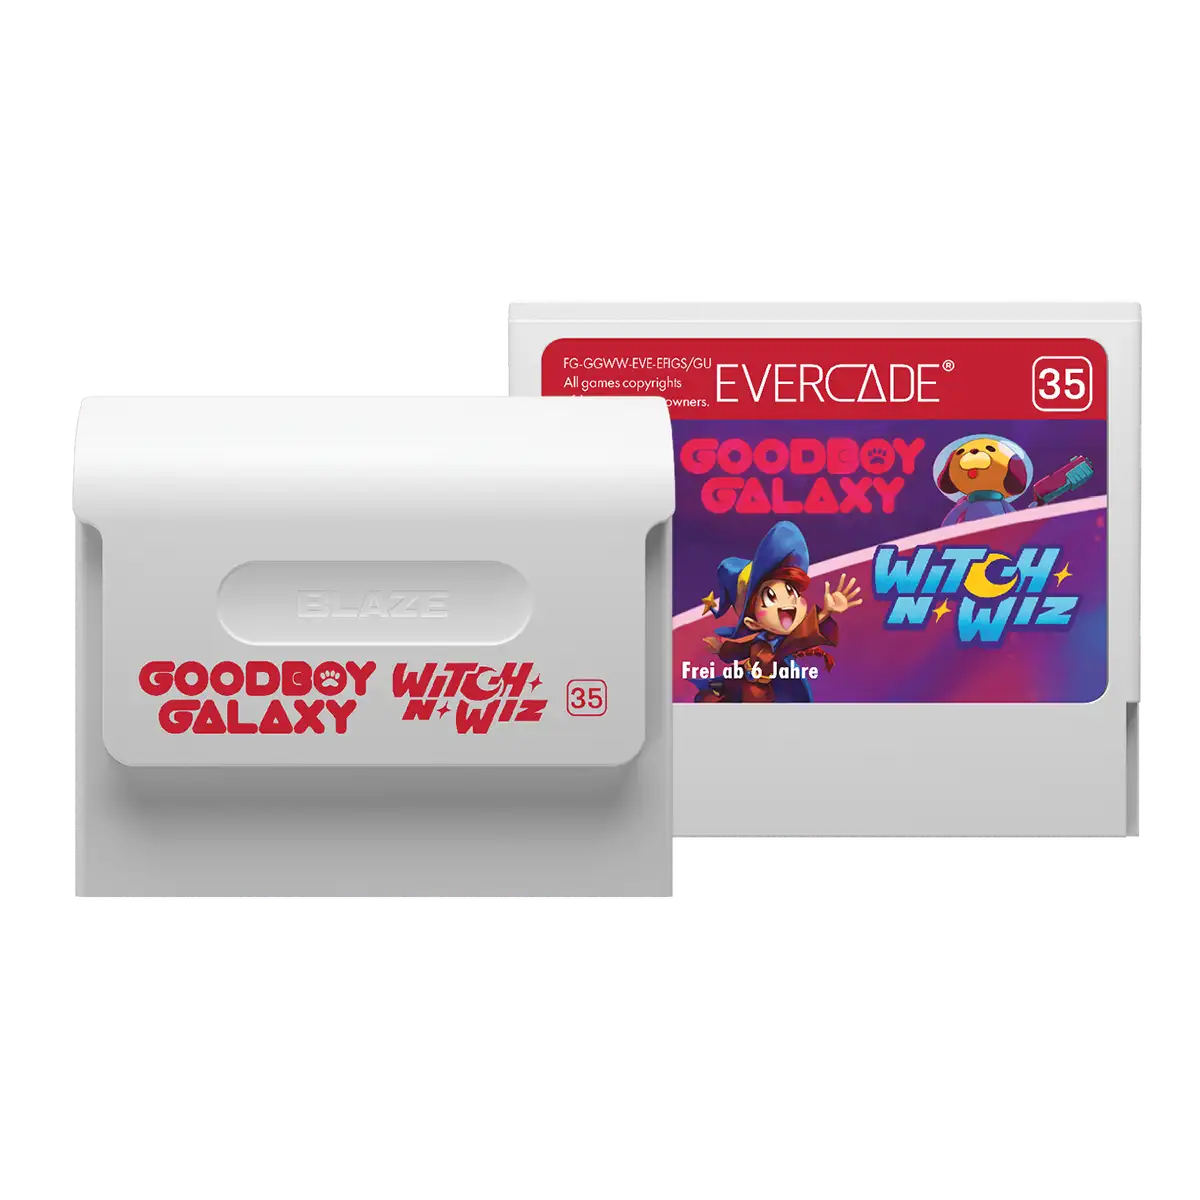 Blaze Evercade Goodboy Galaxy / Witch n Wiz Cartridge Image 2